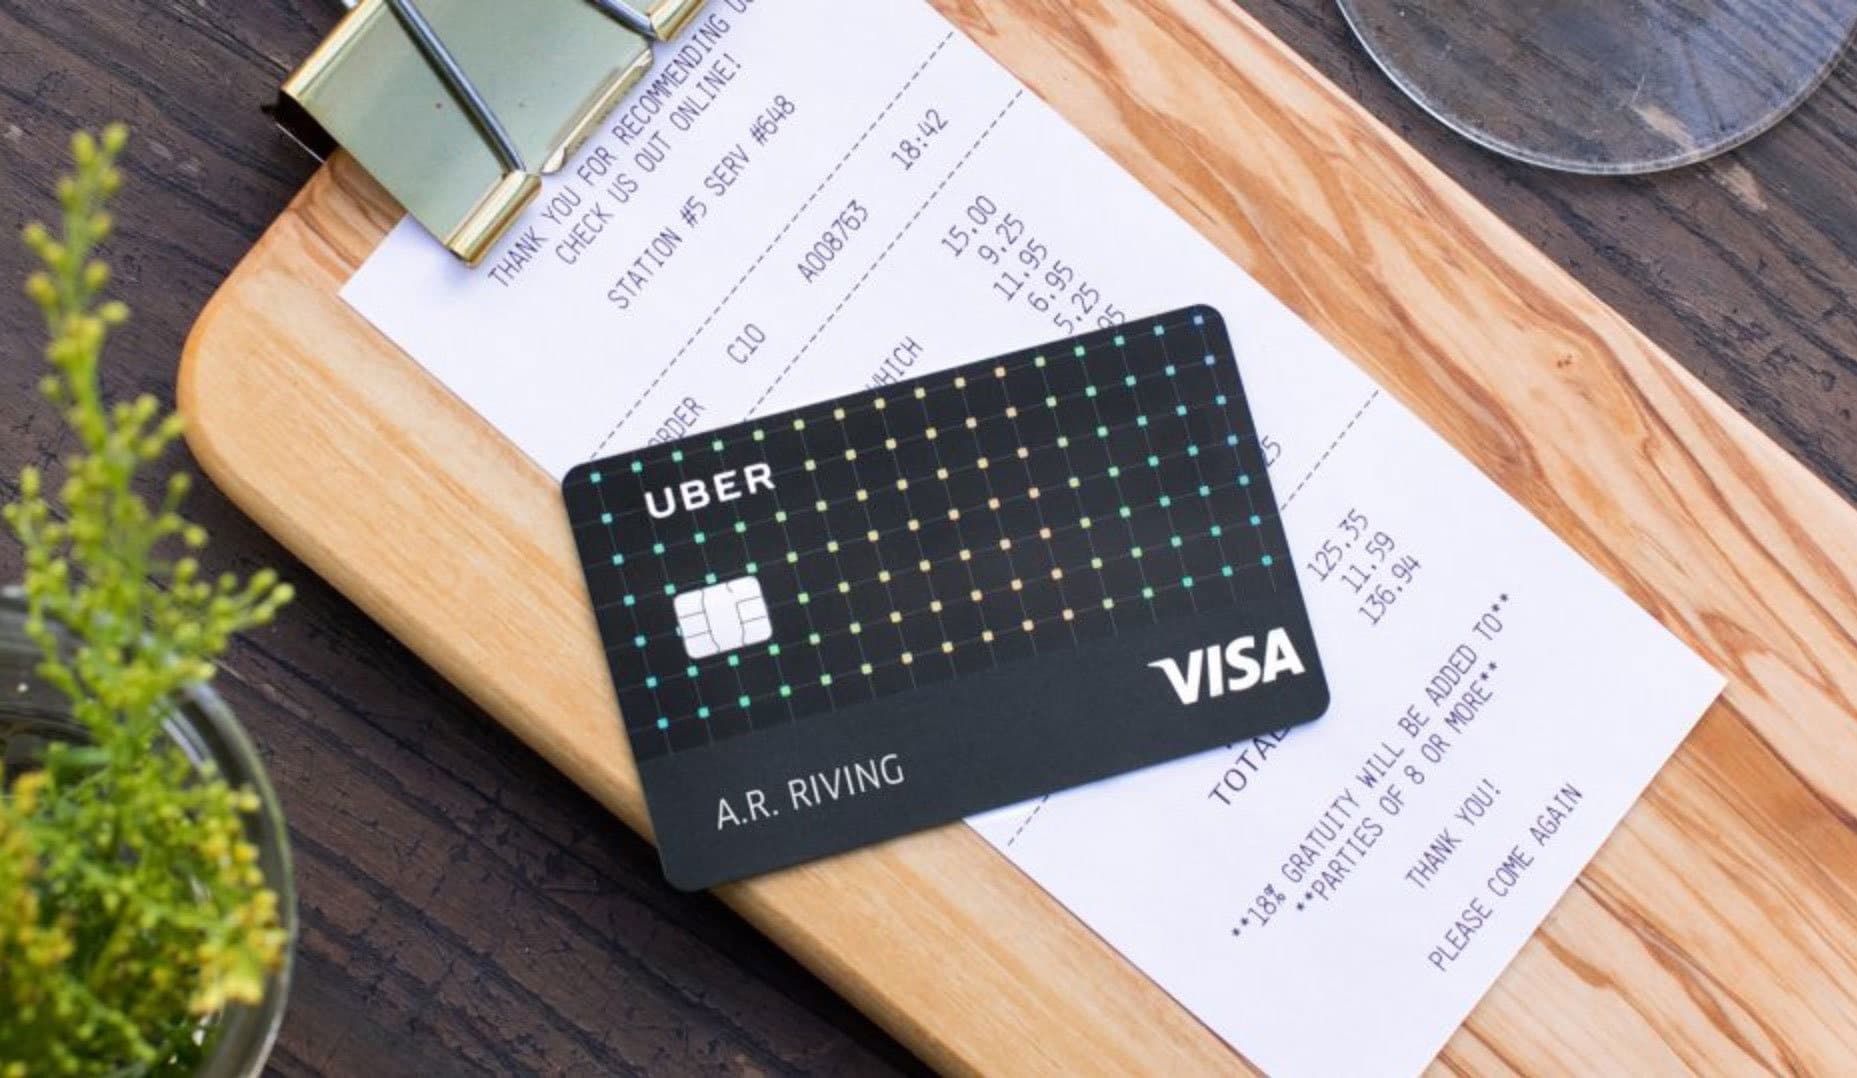 uber visa credit card review